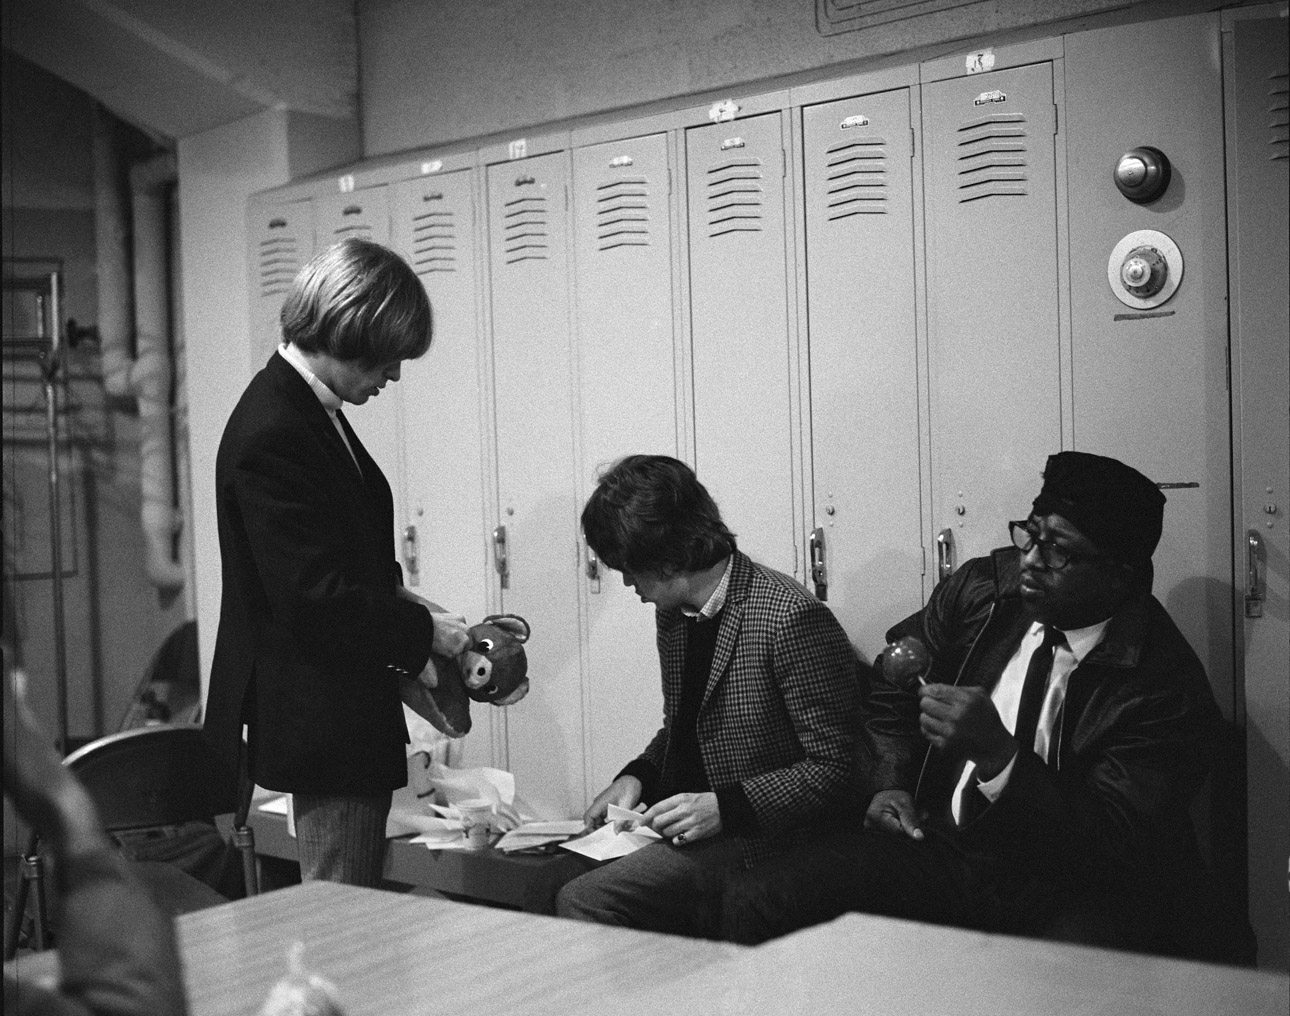 Ο Μπράιαν Τζόουνς και ο Μικ Τζάγκερ ανοίγουν τα γράμματα και δώρα που έχουν στείλει θαυμαστές. Δίπλα τους κάθεται ο θρύλος των Blues, ο Bo Diddley, τρώγοντας ένα καραμελωμένο μήλο